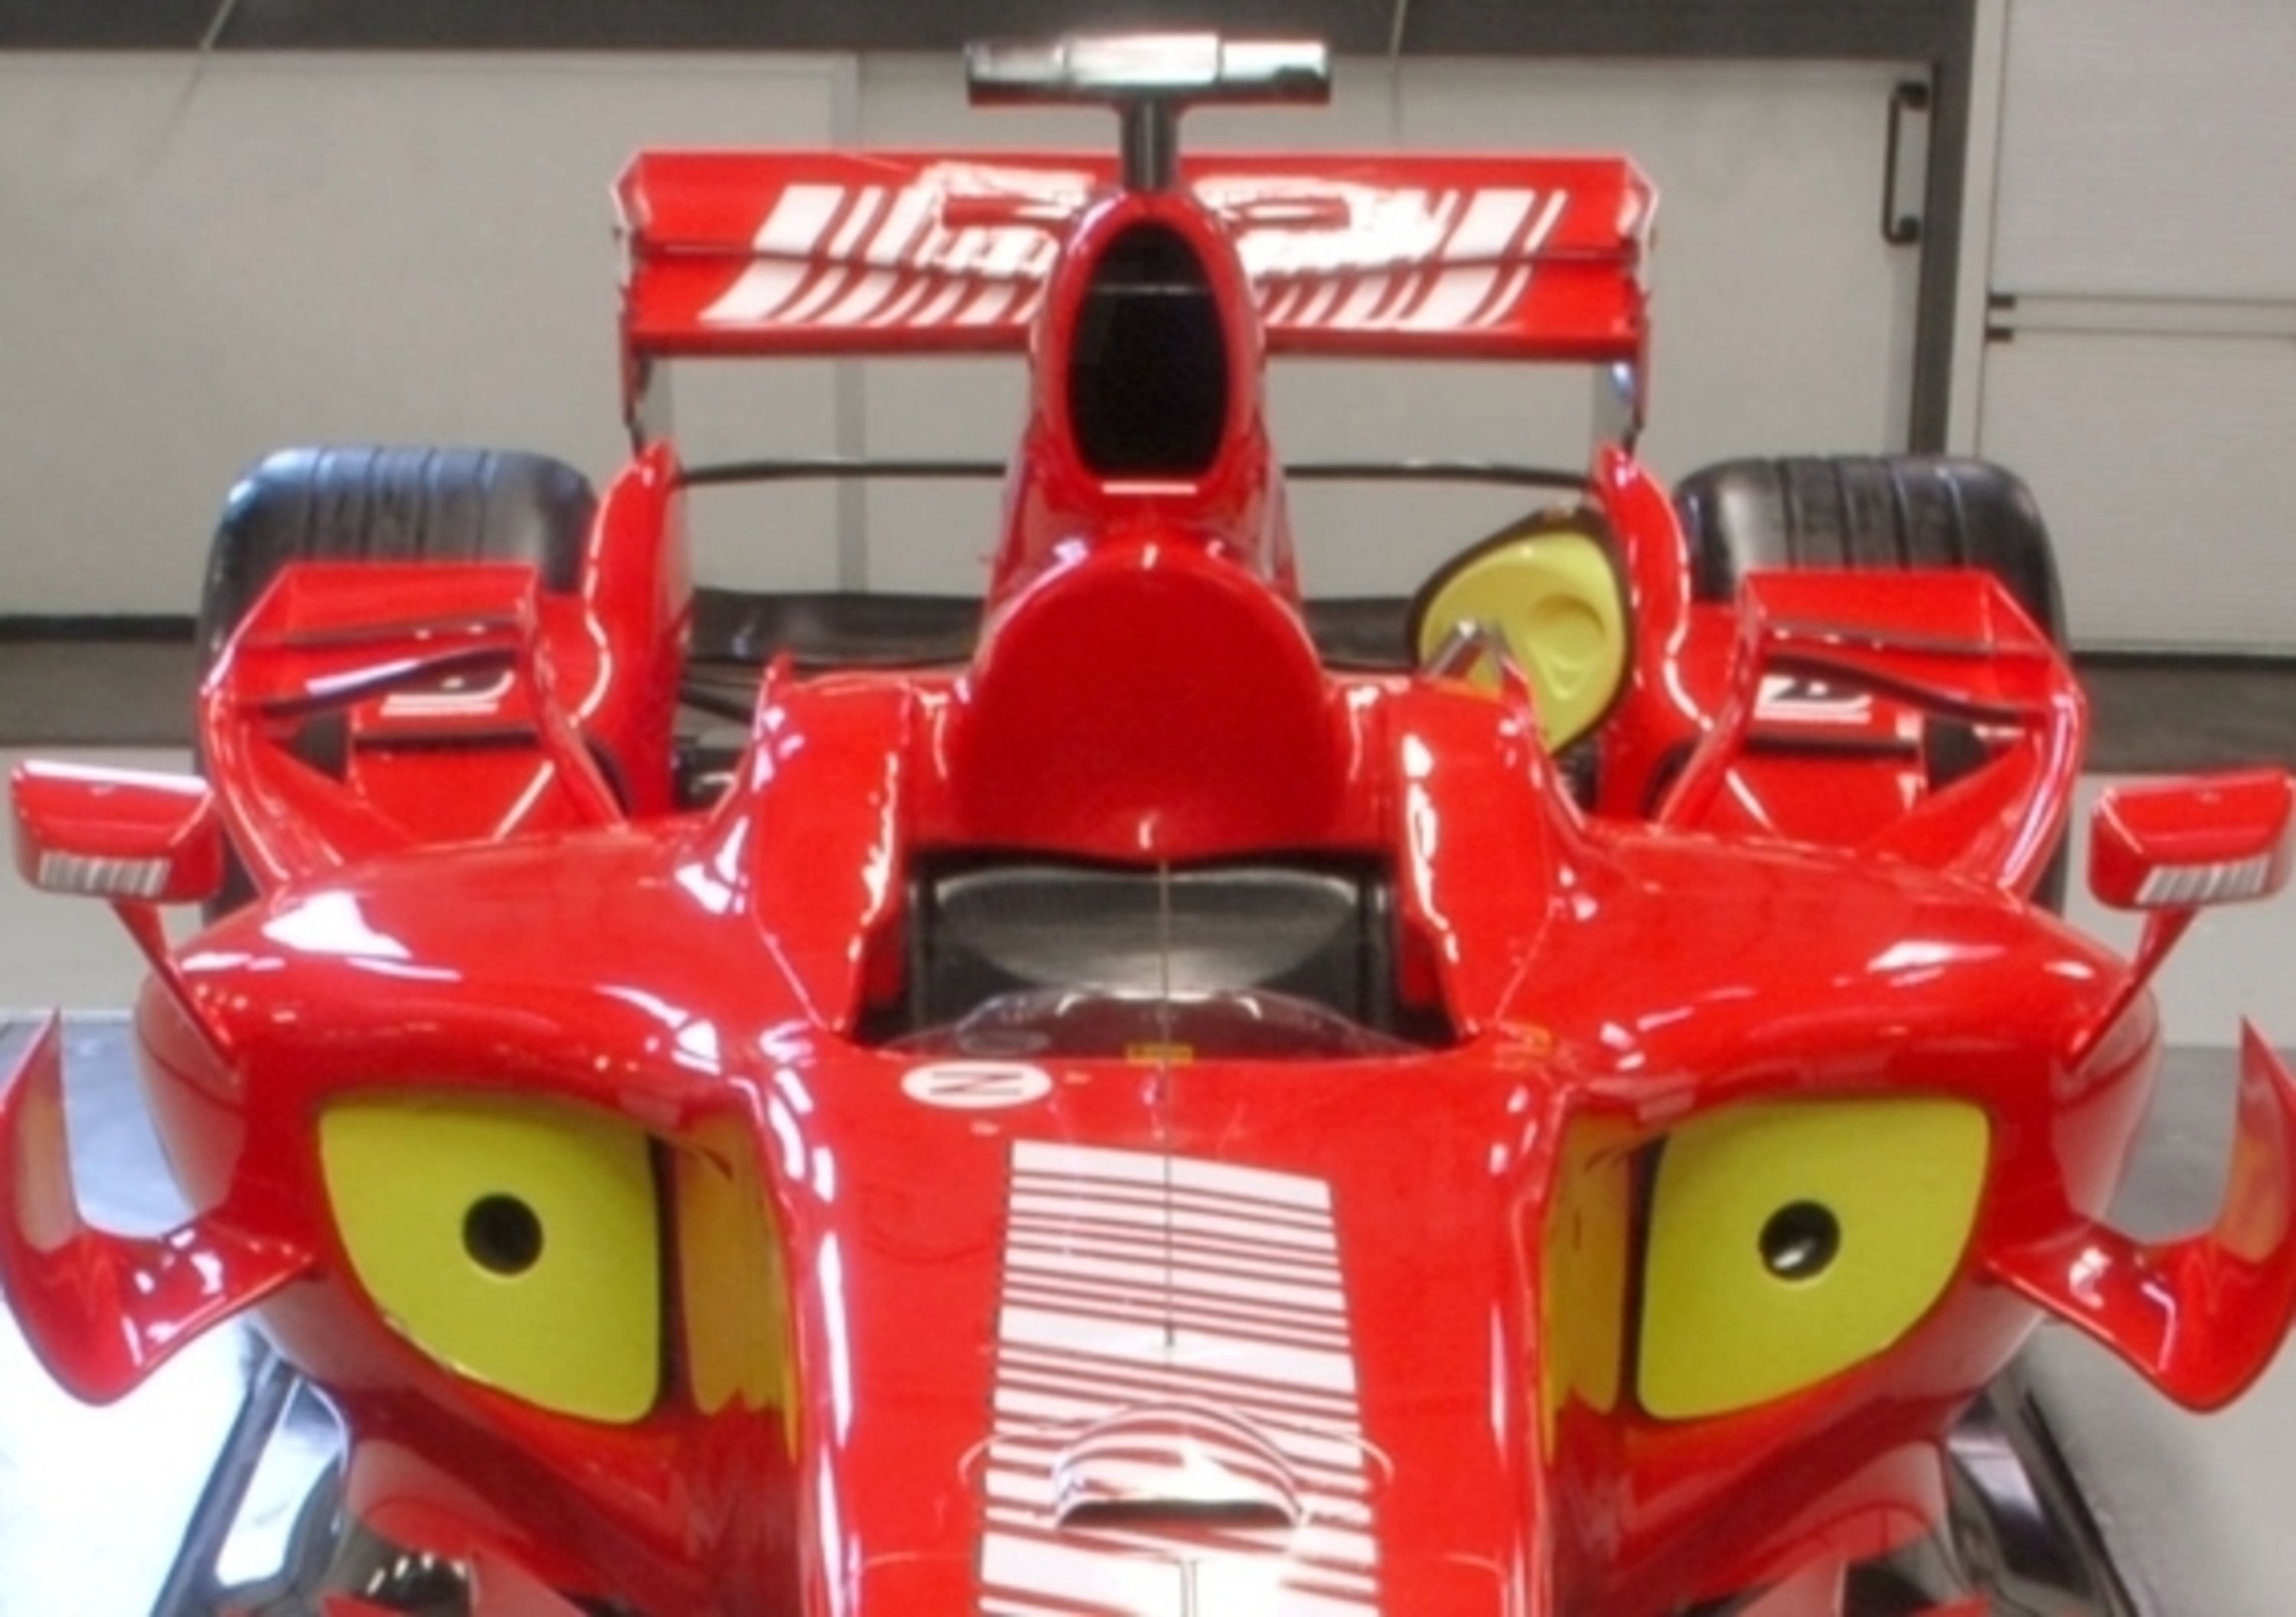 Ferrari F2007